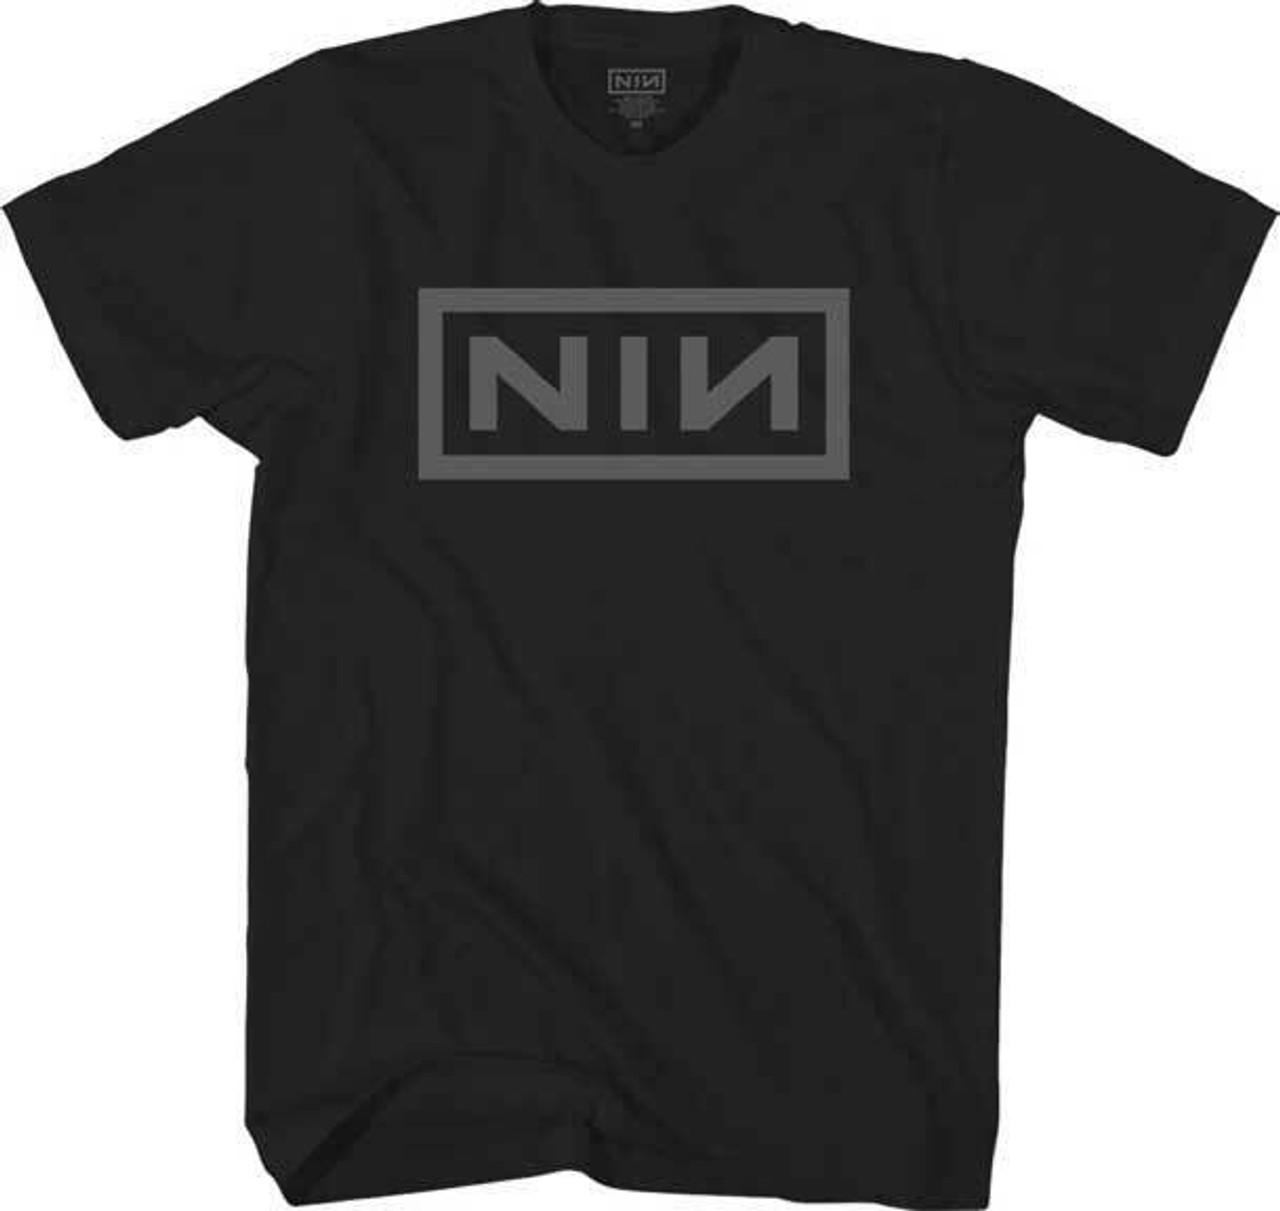 Nine Inch Nails still baring it all 